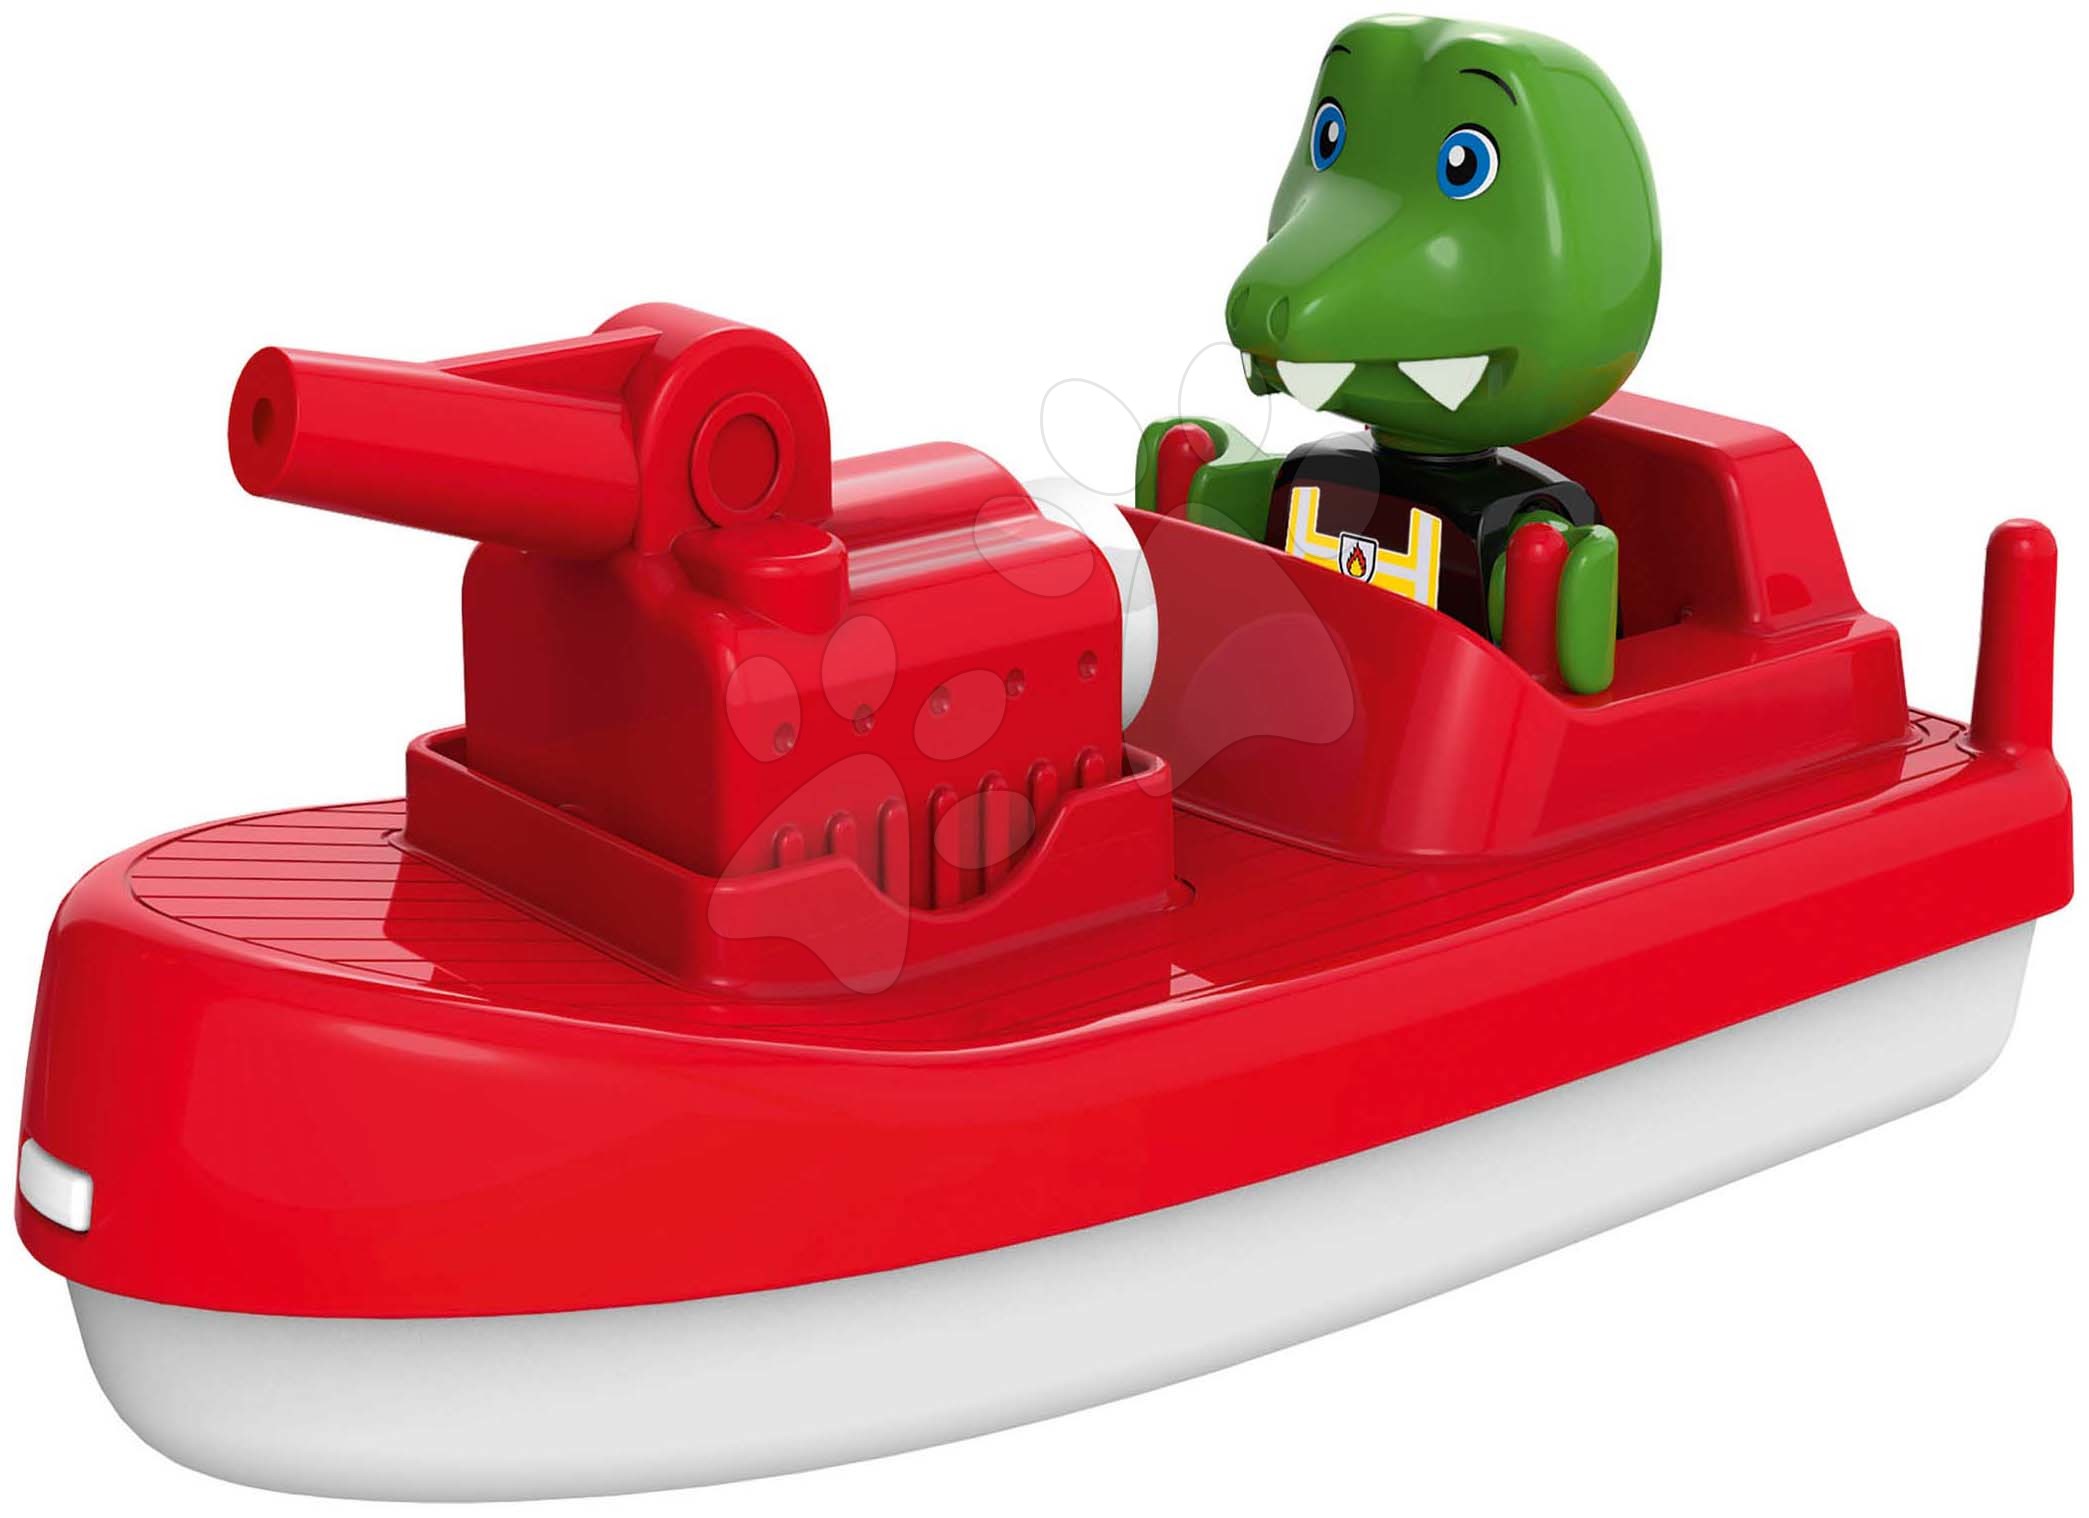 Príslušenstvo k vodným dráham - Motorový čln s vodným delom Fireboat AquaPlay s 2 metrovým dostrelom a kapitánom krokodílom Nils (kompatibilné s Duplom)